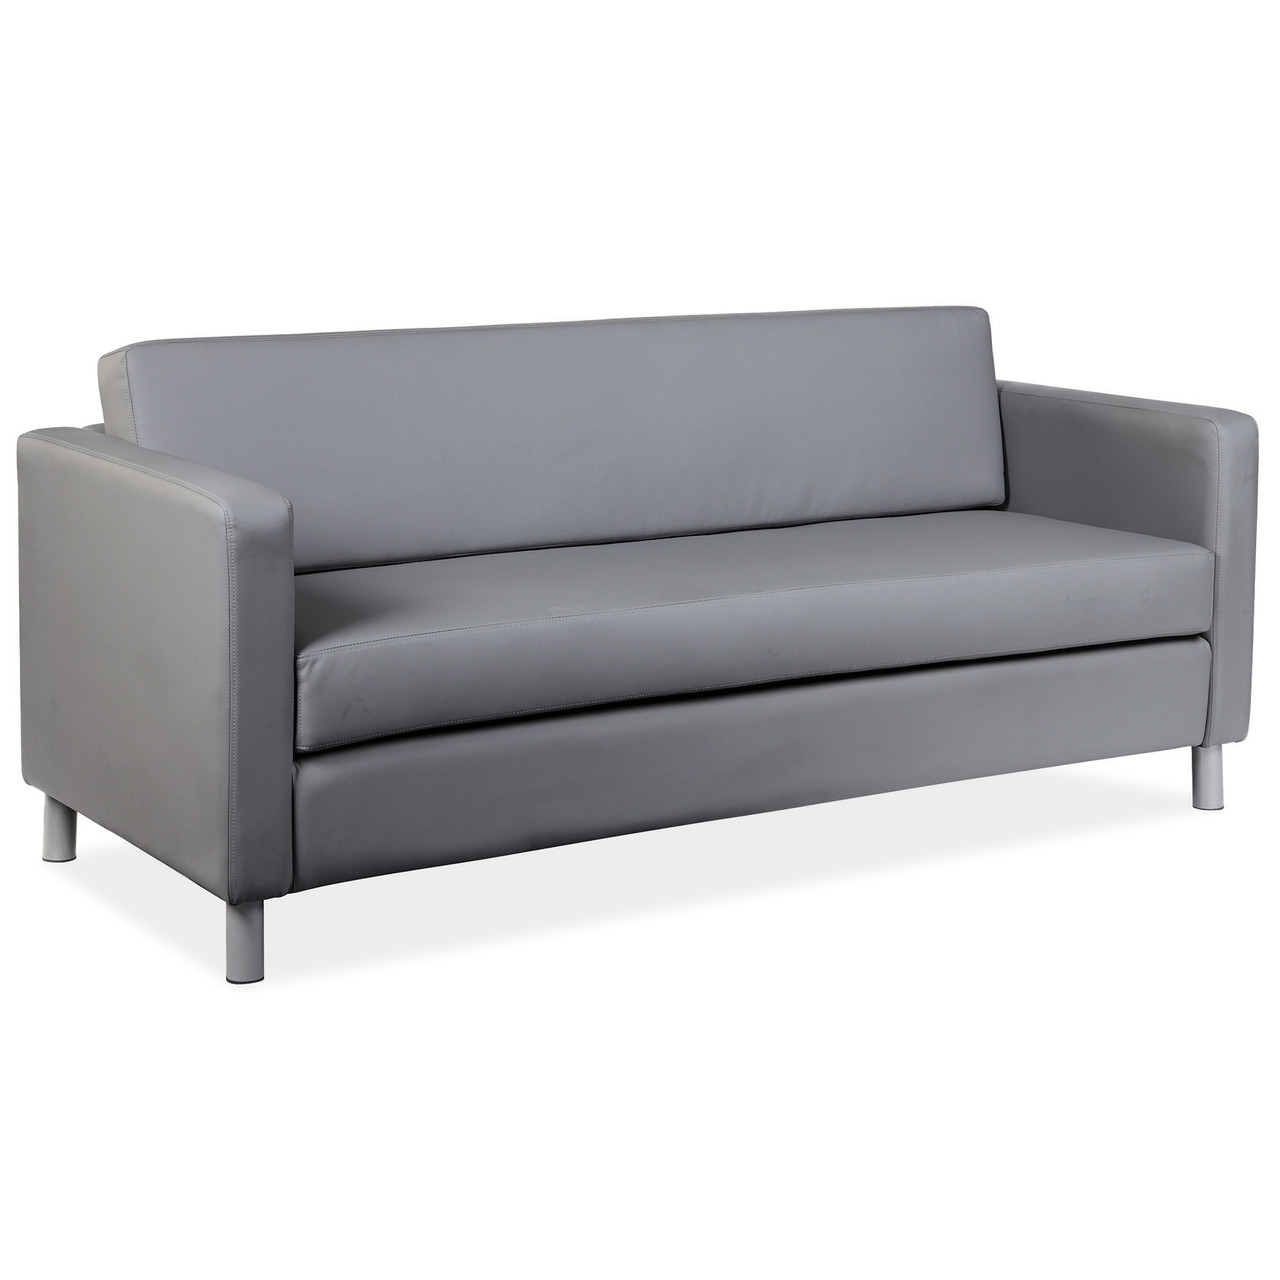 Define | Contemporary Sofa